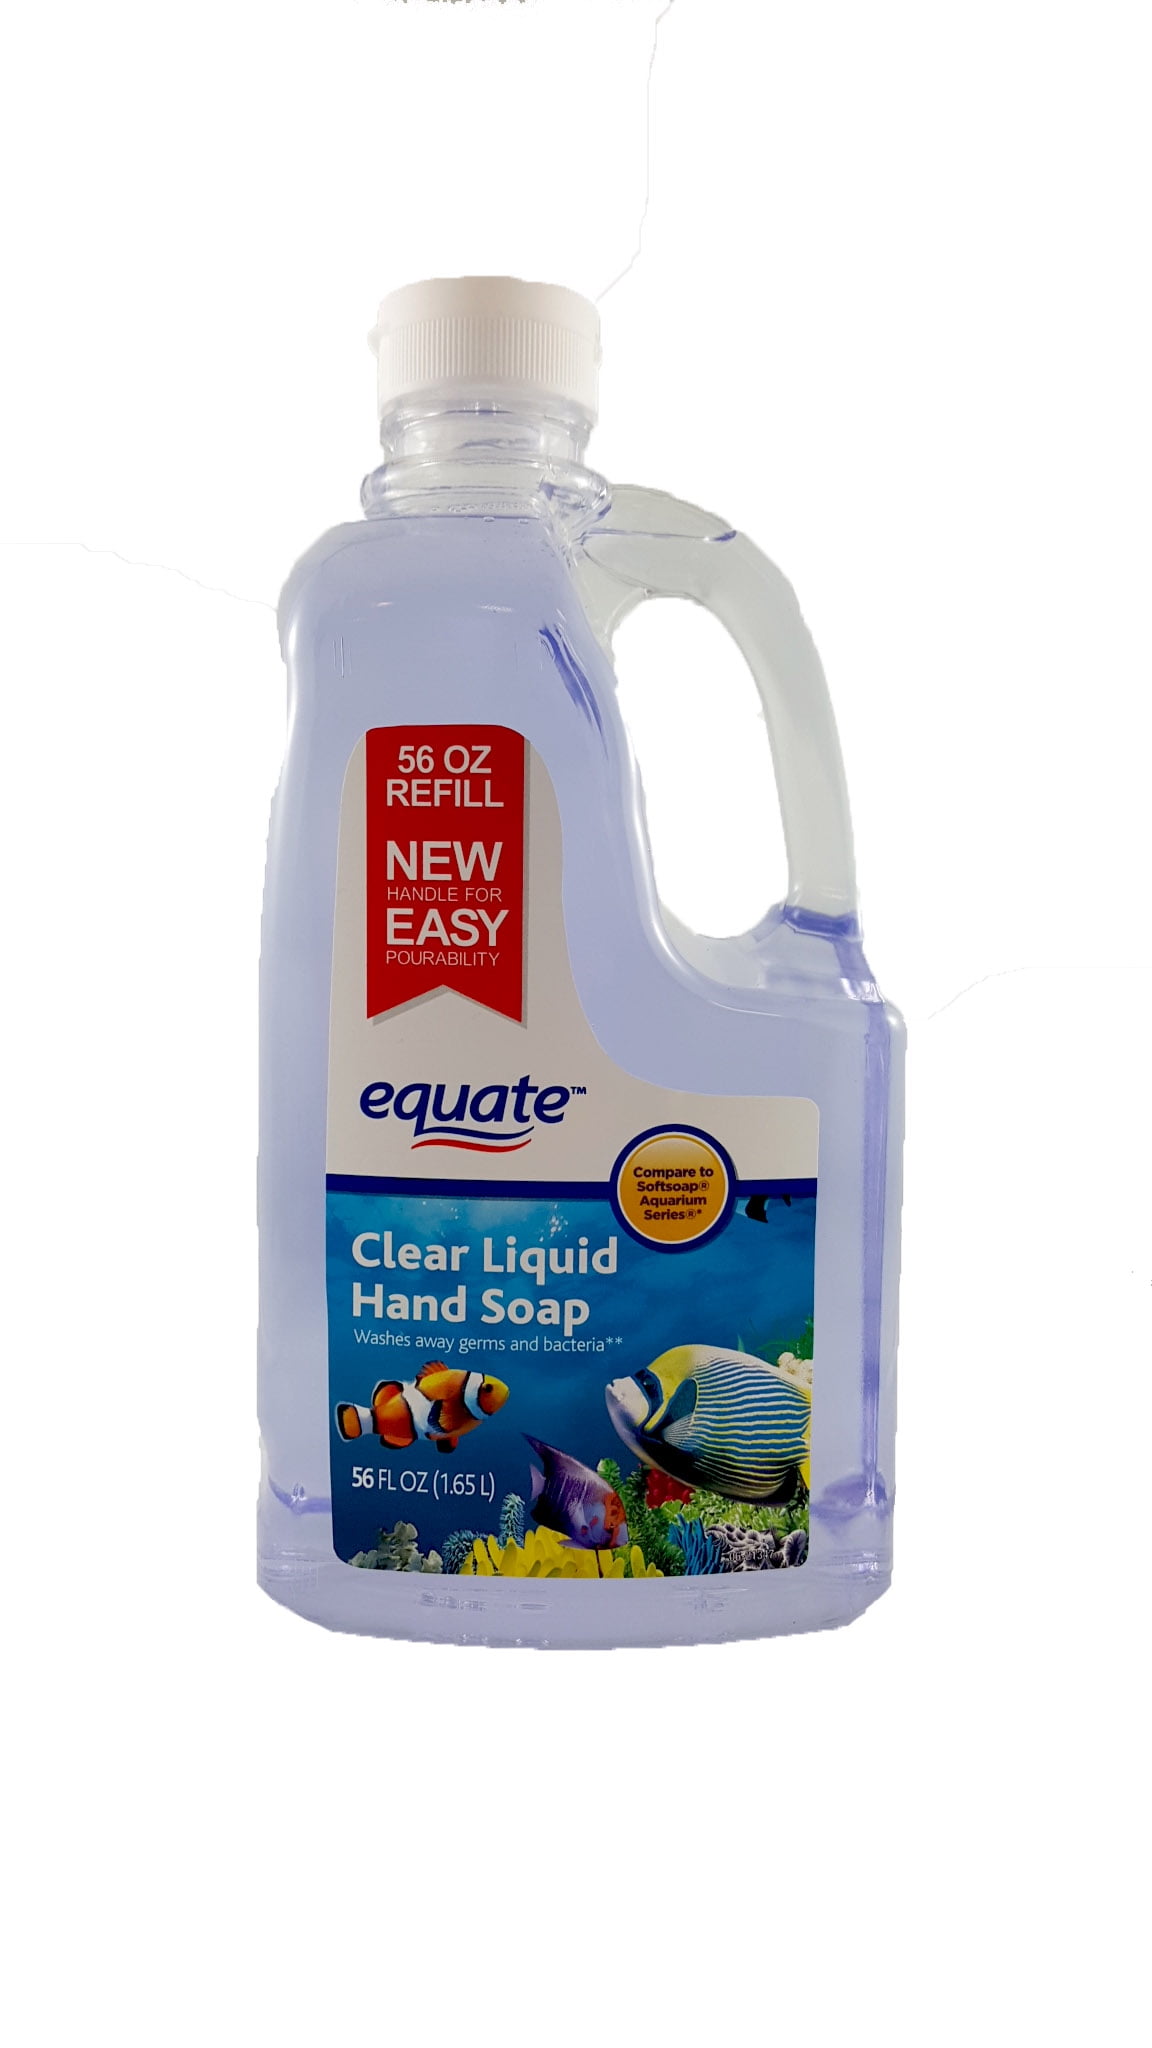 Equate Clear Liquid Hand Soap Refill, 56 Oz - Walmart.com - Walmart.com